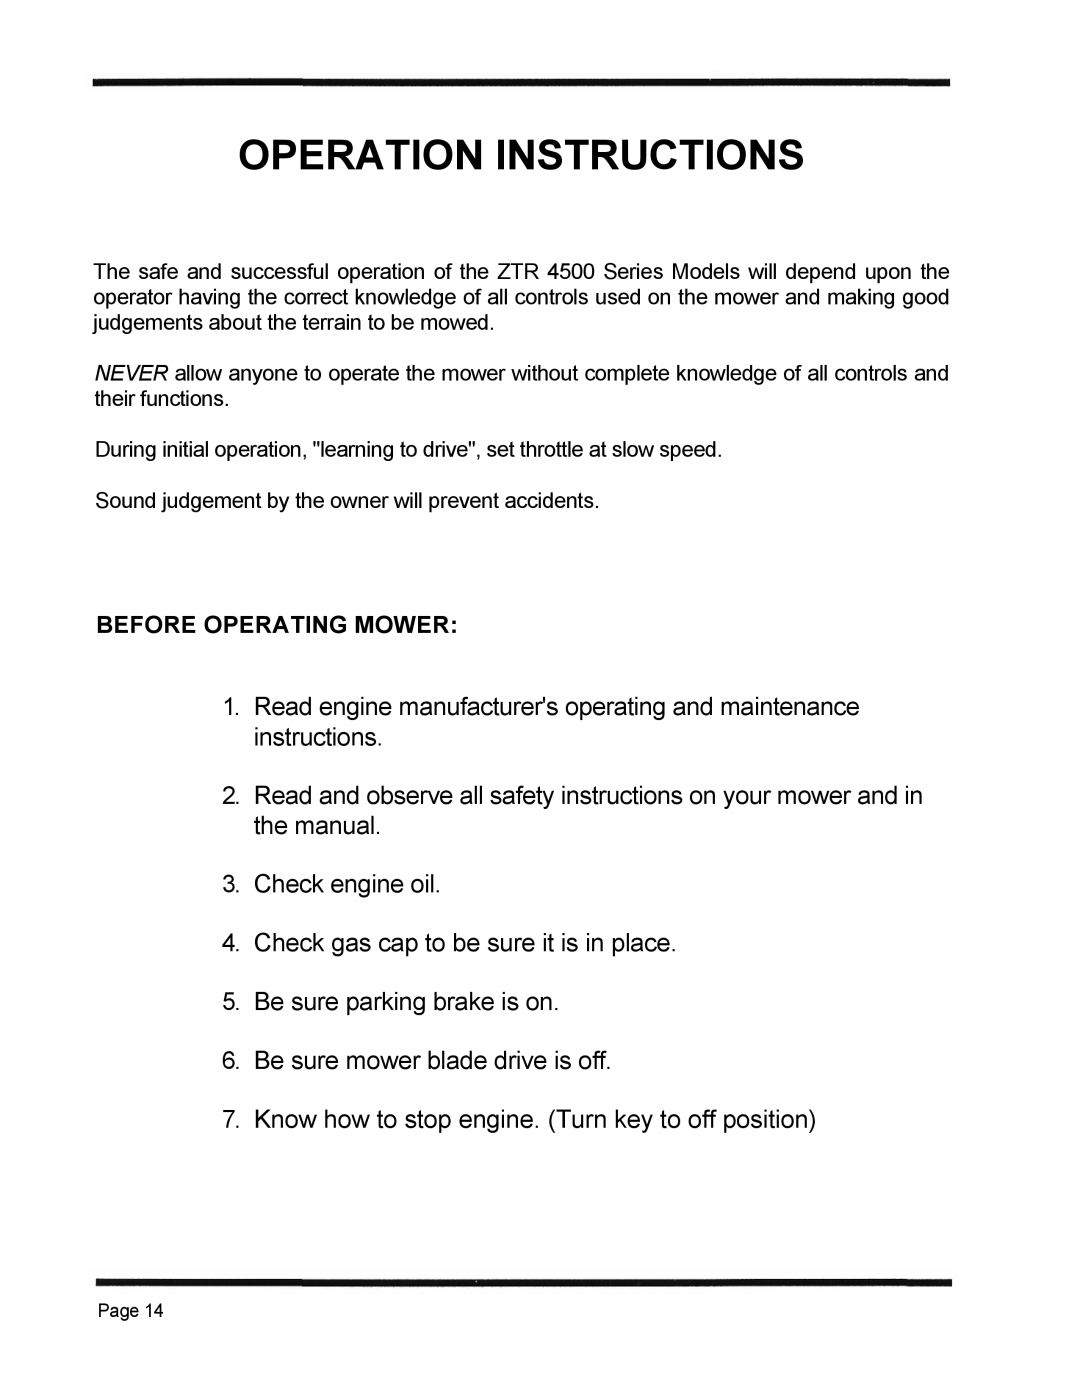 Dixon 1998, ZTR 4515K manual Operation Instructions 